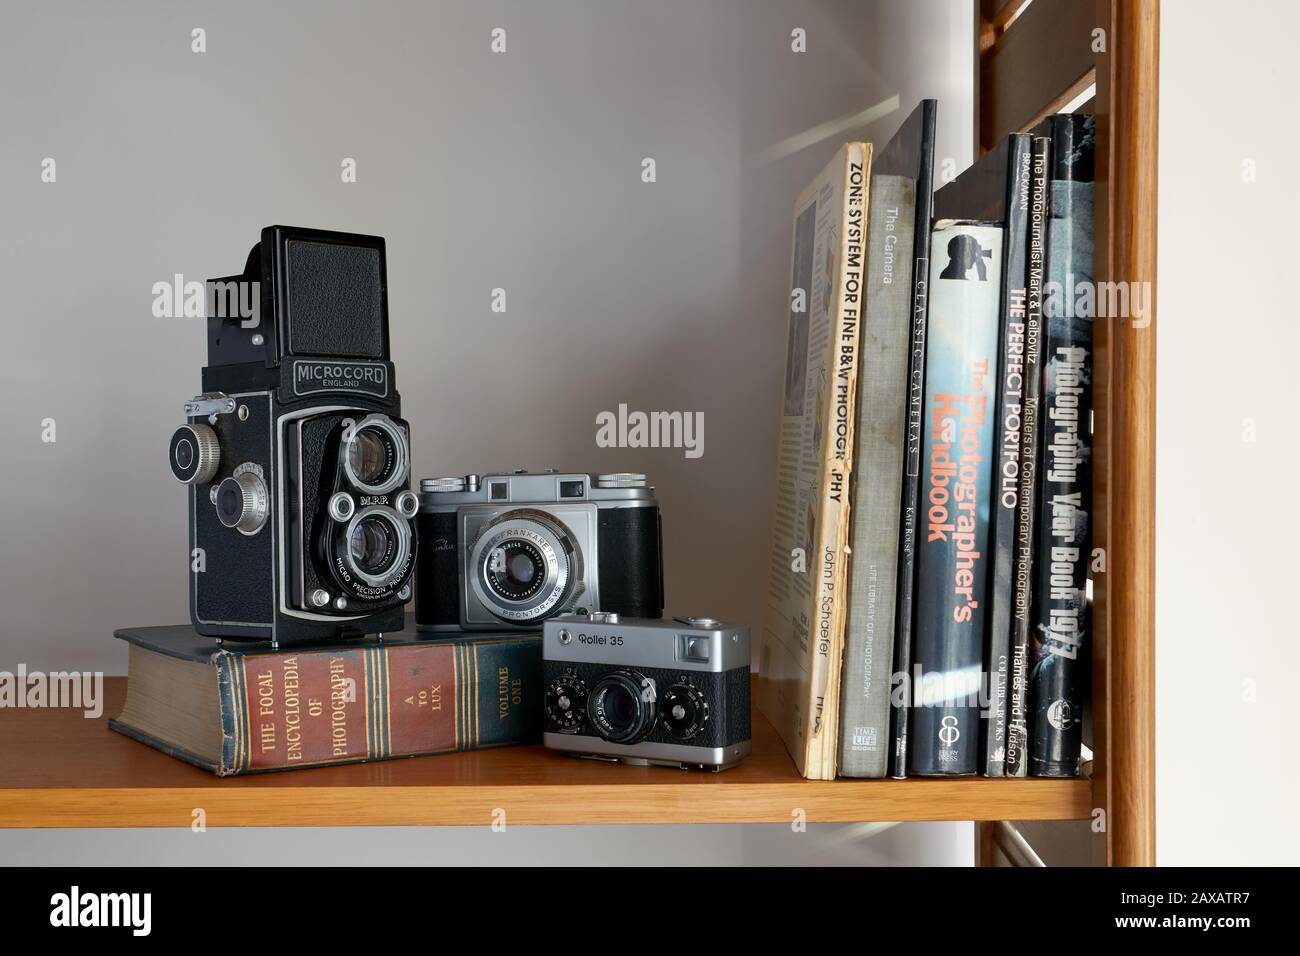 Una fotografía de tres cámaras y libros de fotografía vintage colocados en un estante. Foto de stock